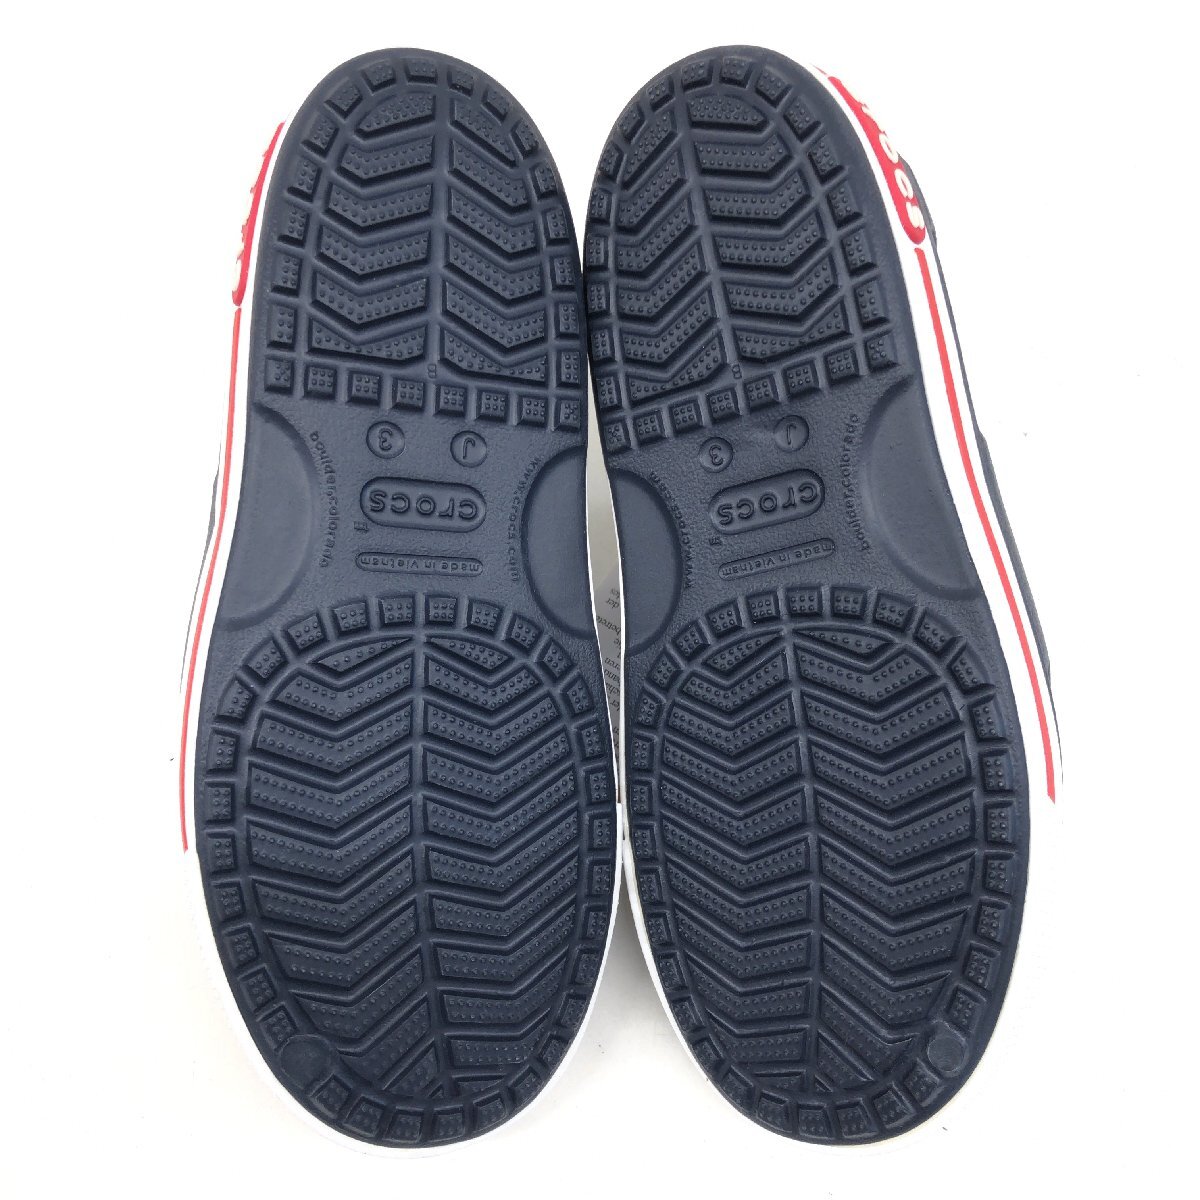 * новый товар Crocs Crocs часы частота 2 Raver сандалии J3(21cm) темно-синий темно-синий ремень сандалии морской обувь не использовался Kids Junior 